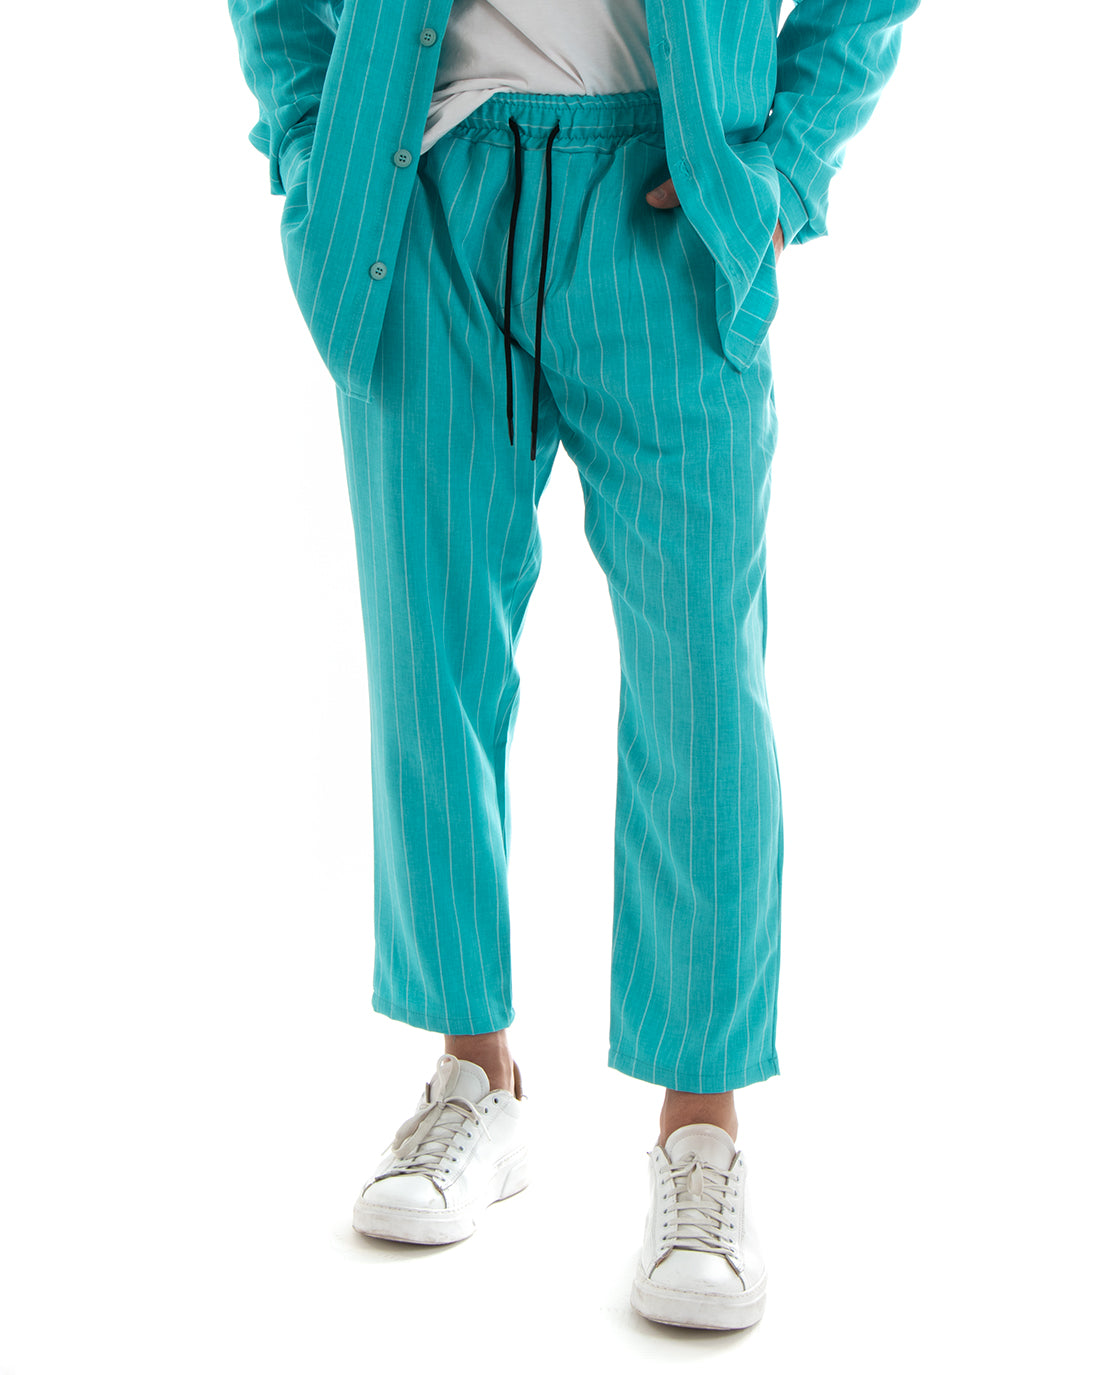 Completo Set Coordinato Uomo Viscosa Camicia Con Colletto Pantaloni Outfit Rigato Gessato Azzurro GIOSAL-OU2266A